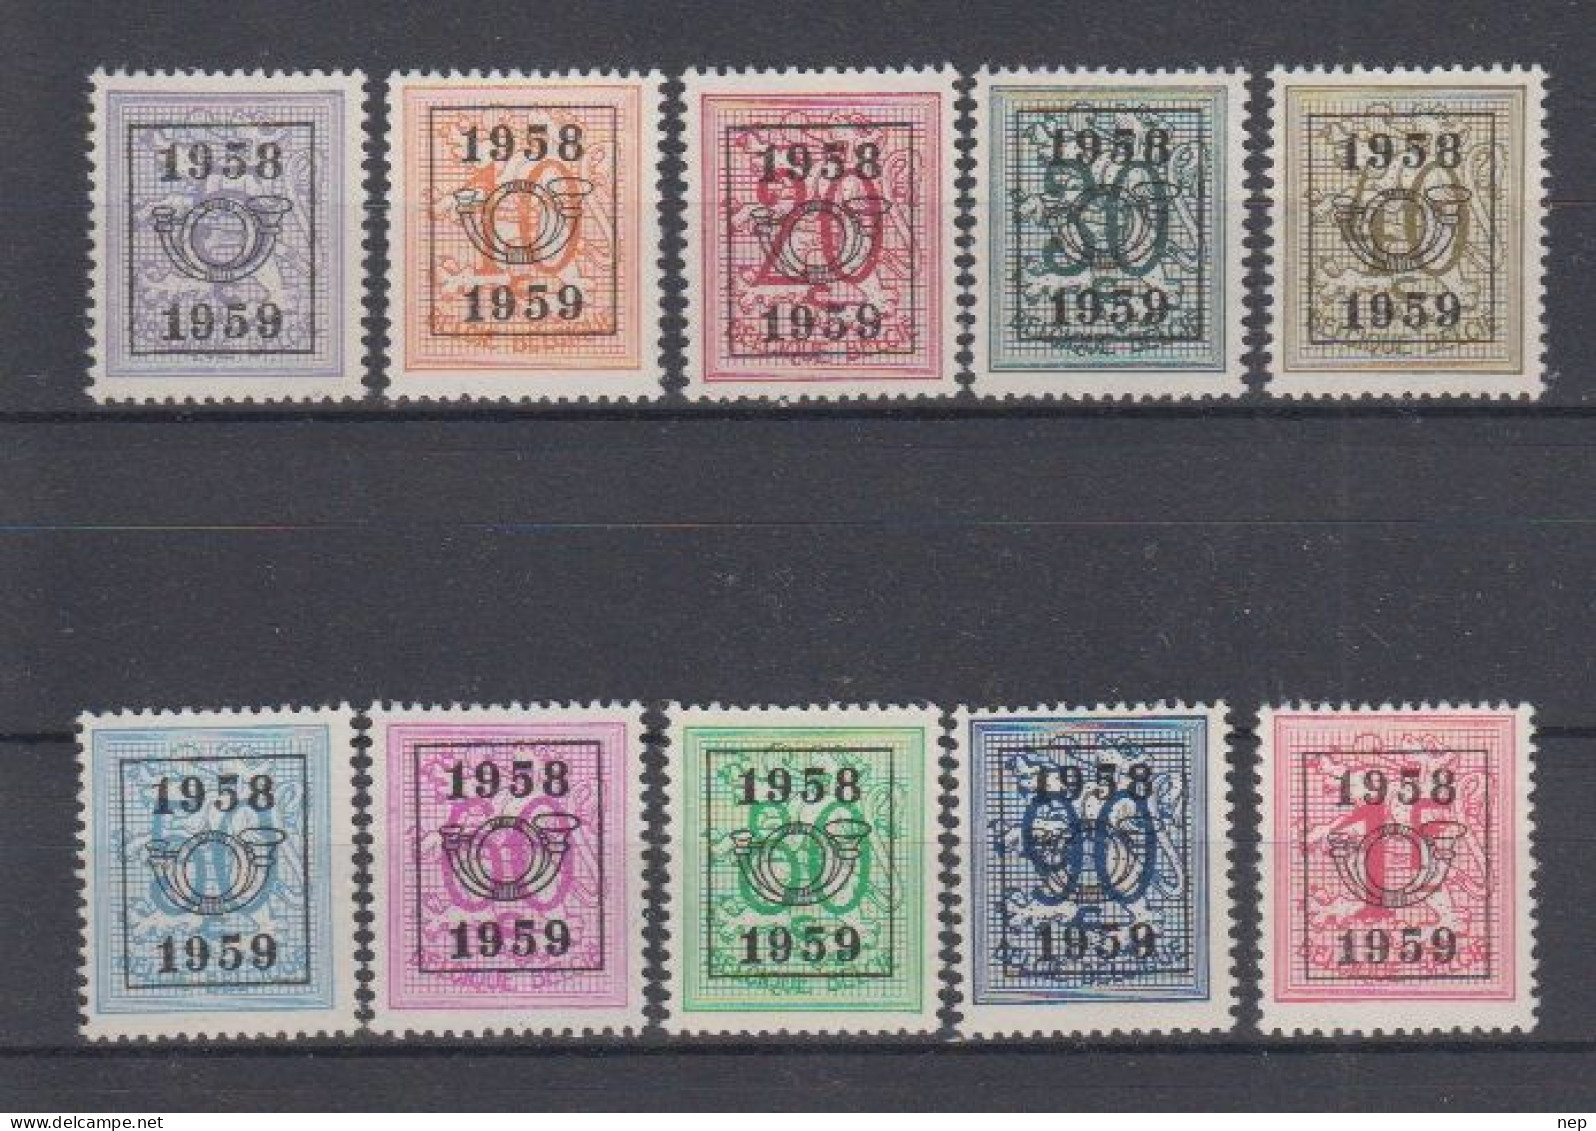 BELGIË - OBP - 1958 - PRE 676/85 (51 Type E) - MNH** - Typografisch 1951-80 (Cijfer Op Leeuw)